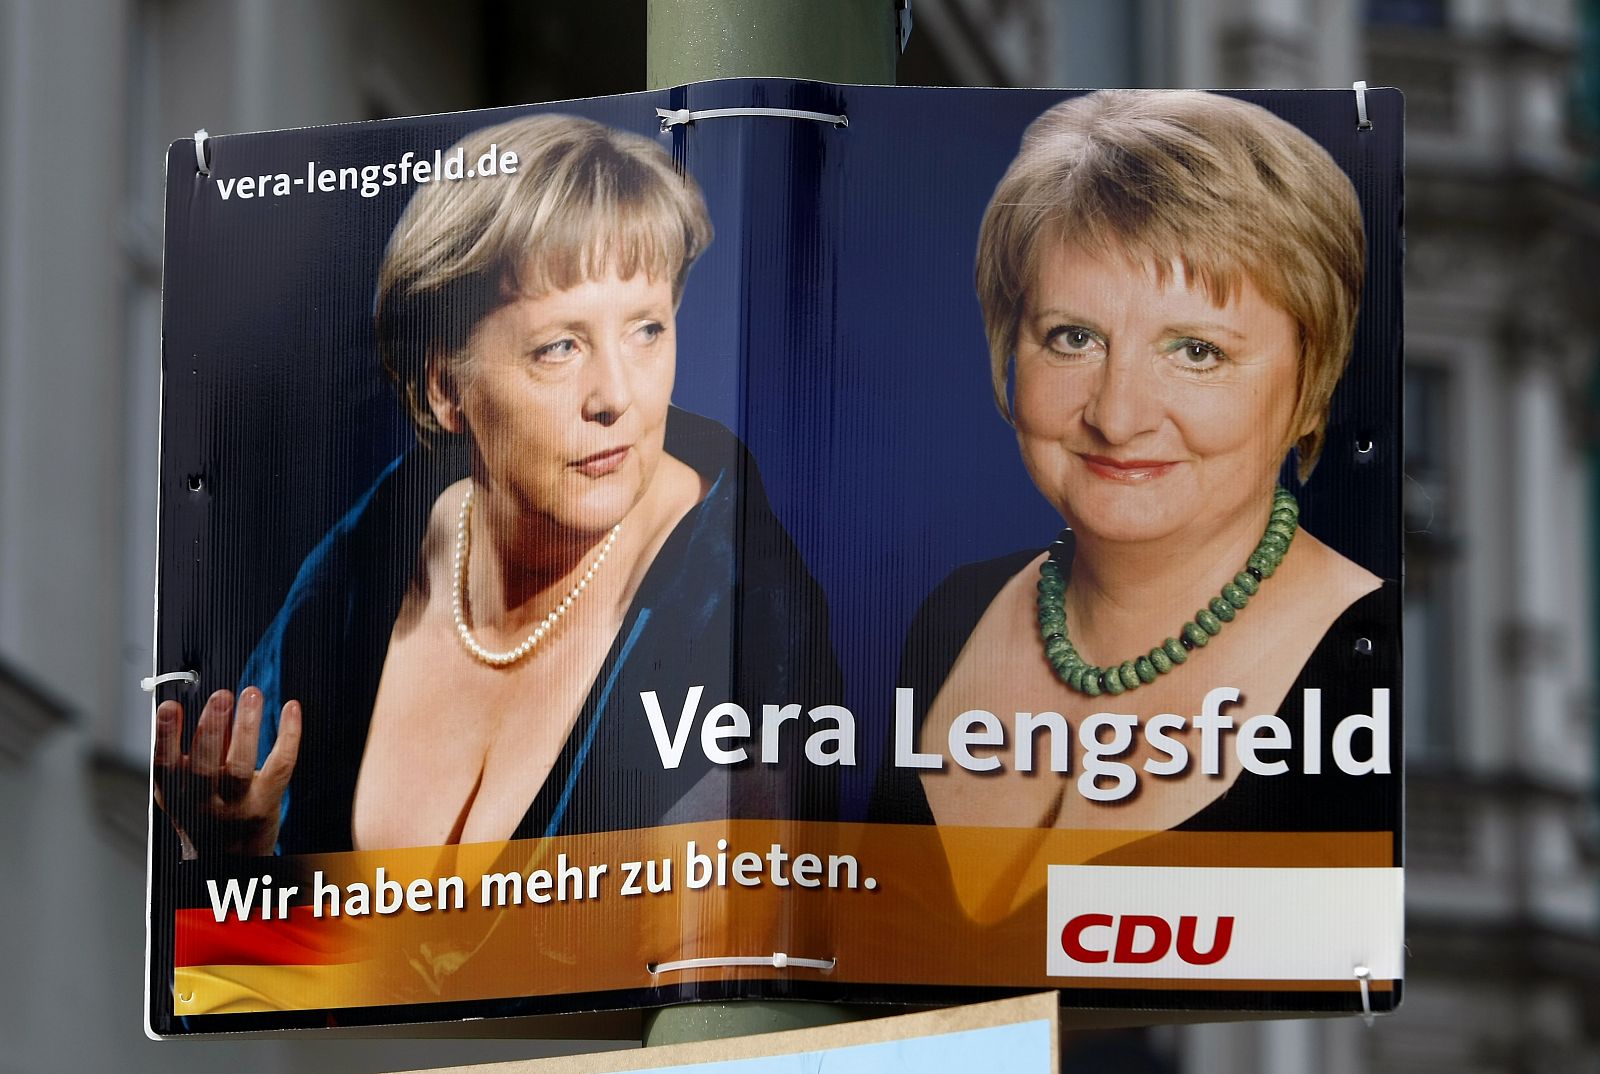 Imagen del cartel de la discordia, con Merkel y la candidata Lengsfeld.